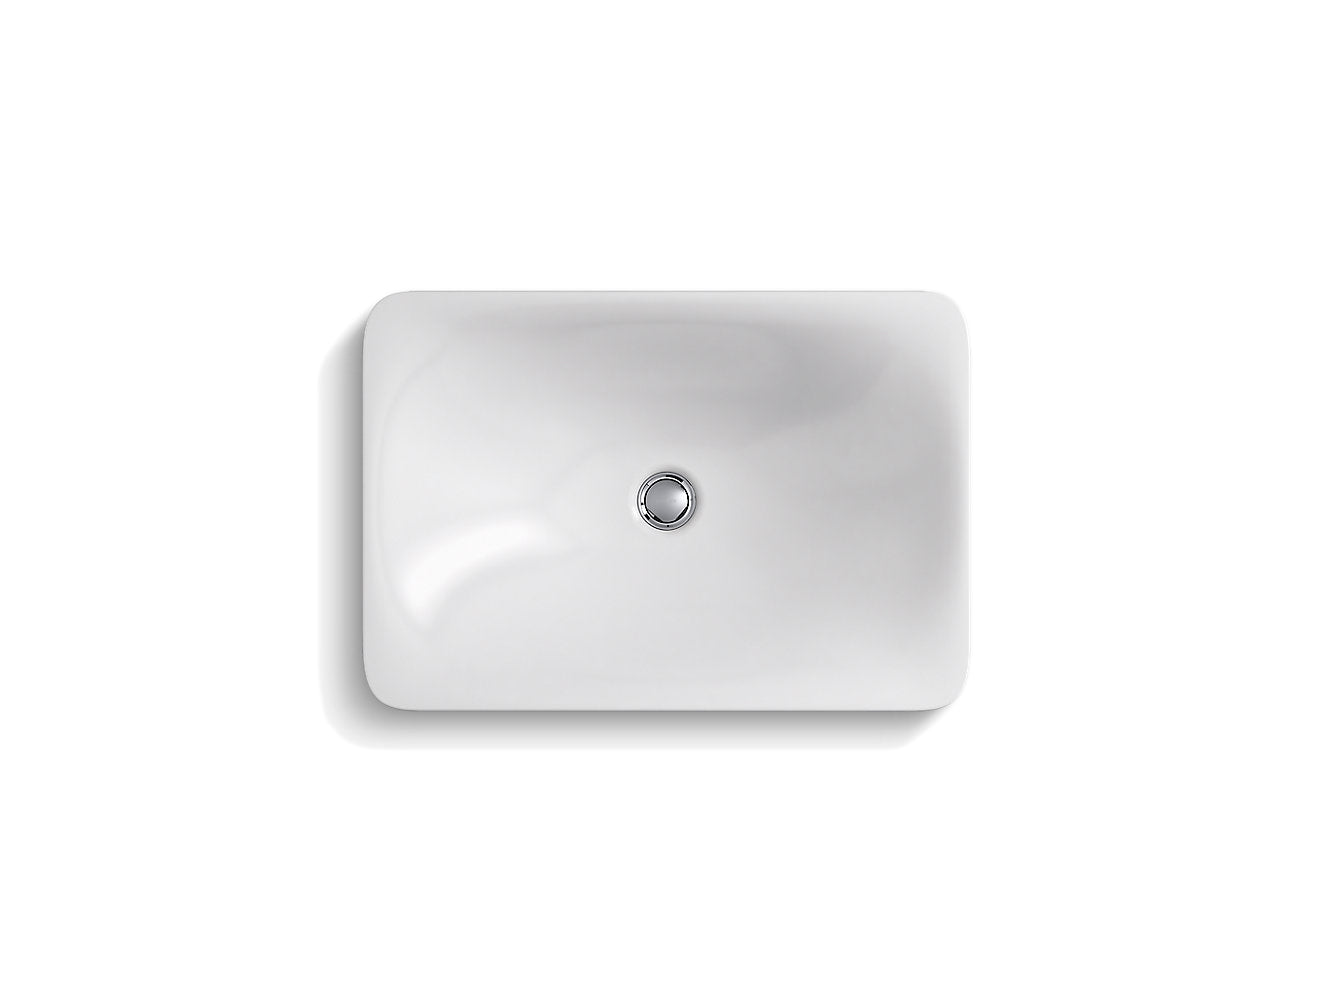 Lavabo de salle de bain rectangulaire à encastrer pour pataugeoire Kohler Carillon 21-1/8" X 14-9/16" - Blanc